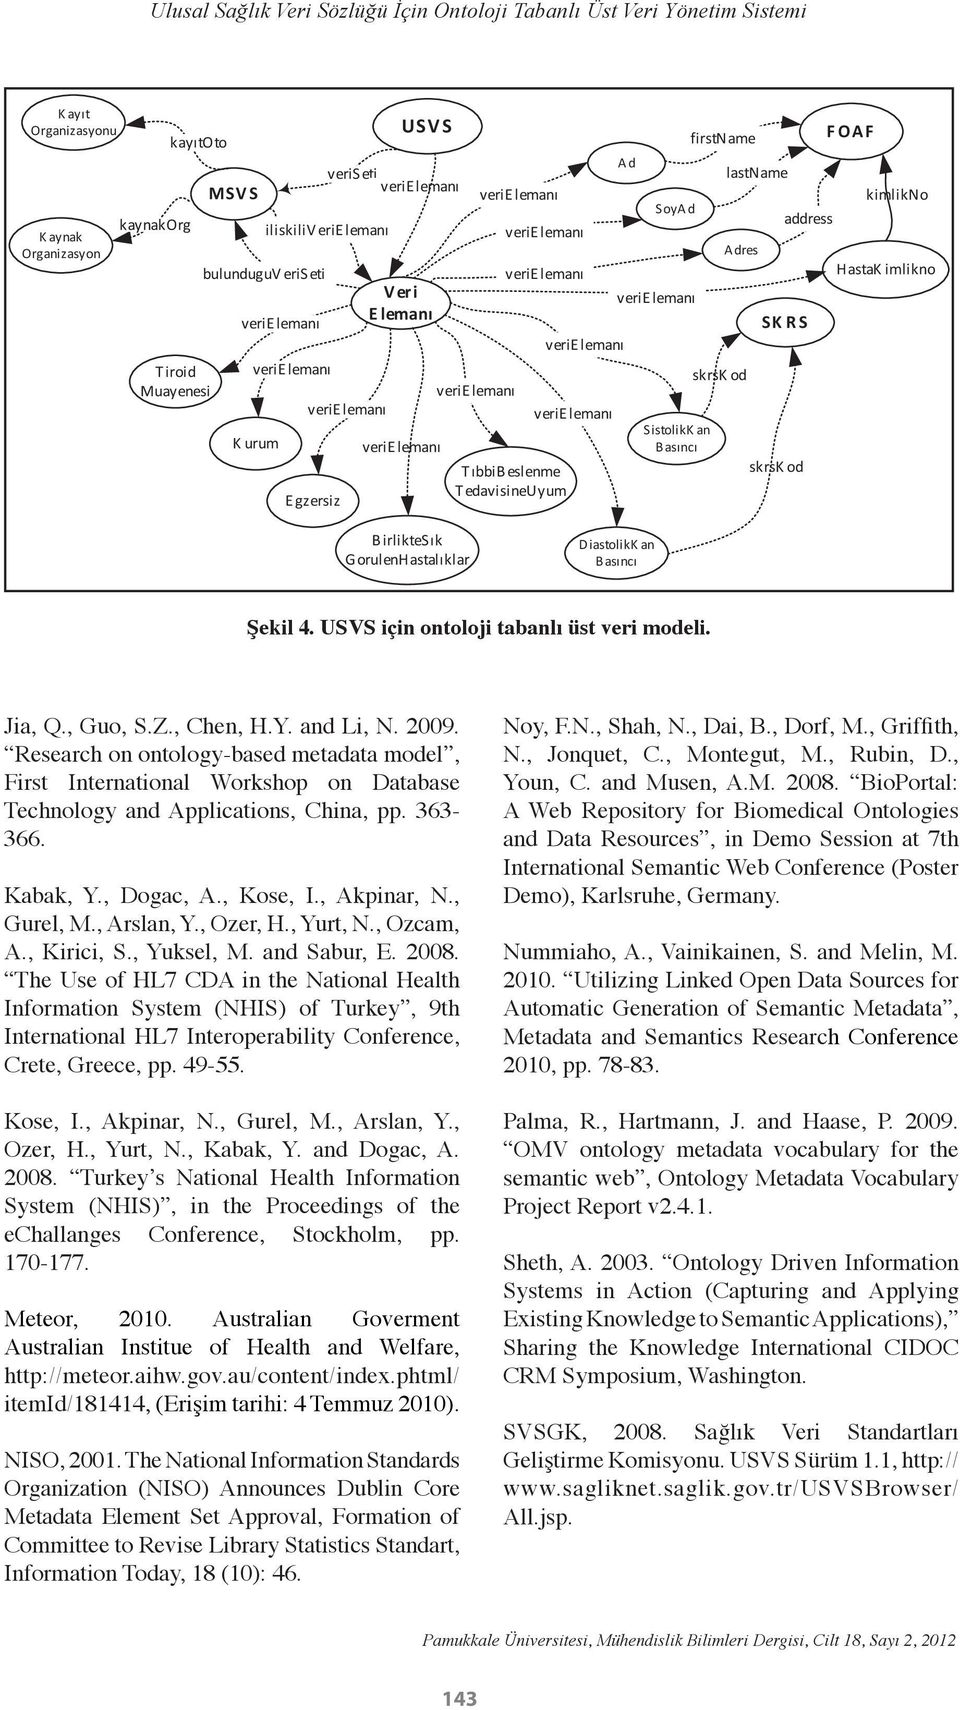 BirlikteSık GorulenHastalıklar DiastolikK an Basıncı Şekil 4. USVS için ontoloji tabanlı üst veri modeli. Jia, Q., Guo, S.Z., Chen, H.Y. and Li, N. 2009.